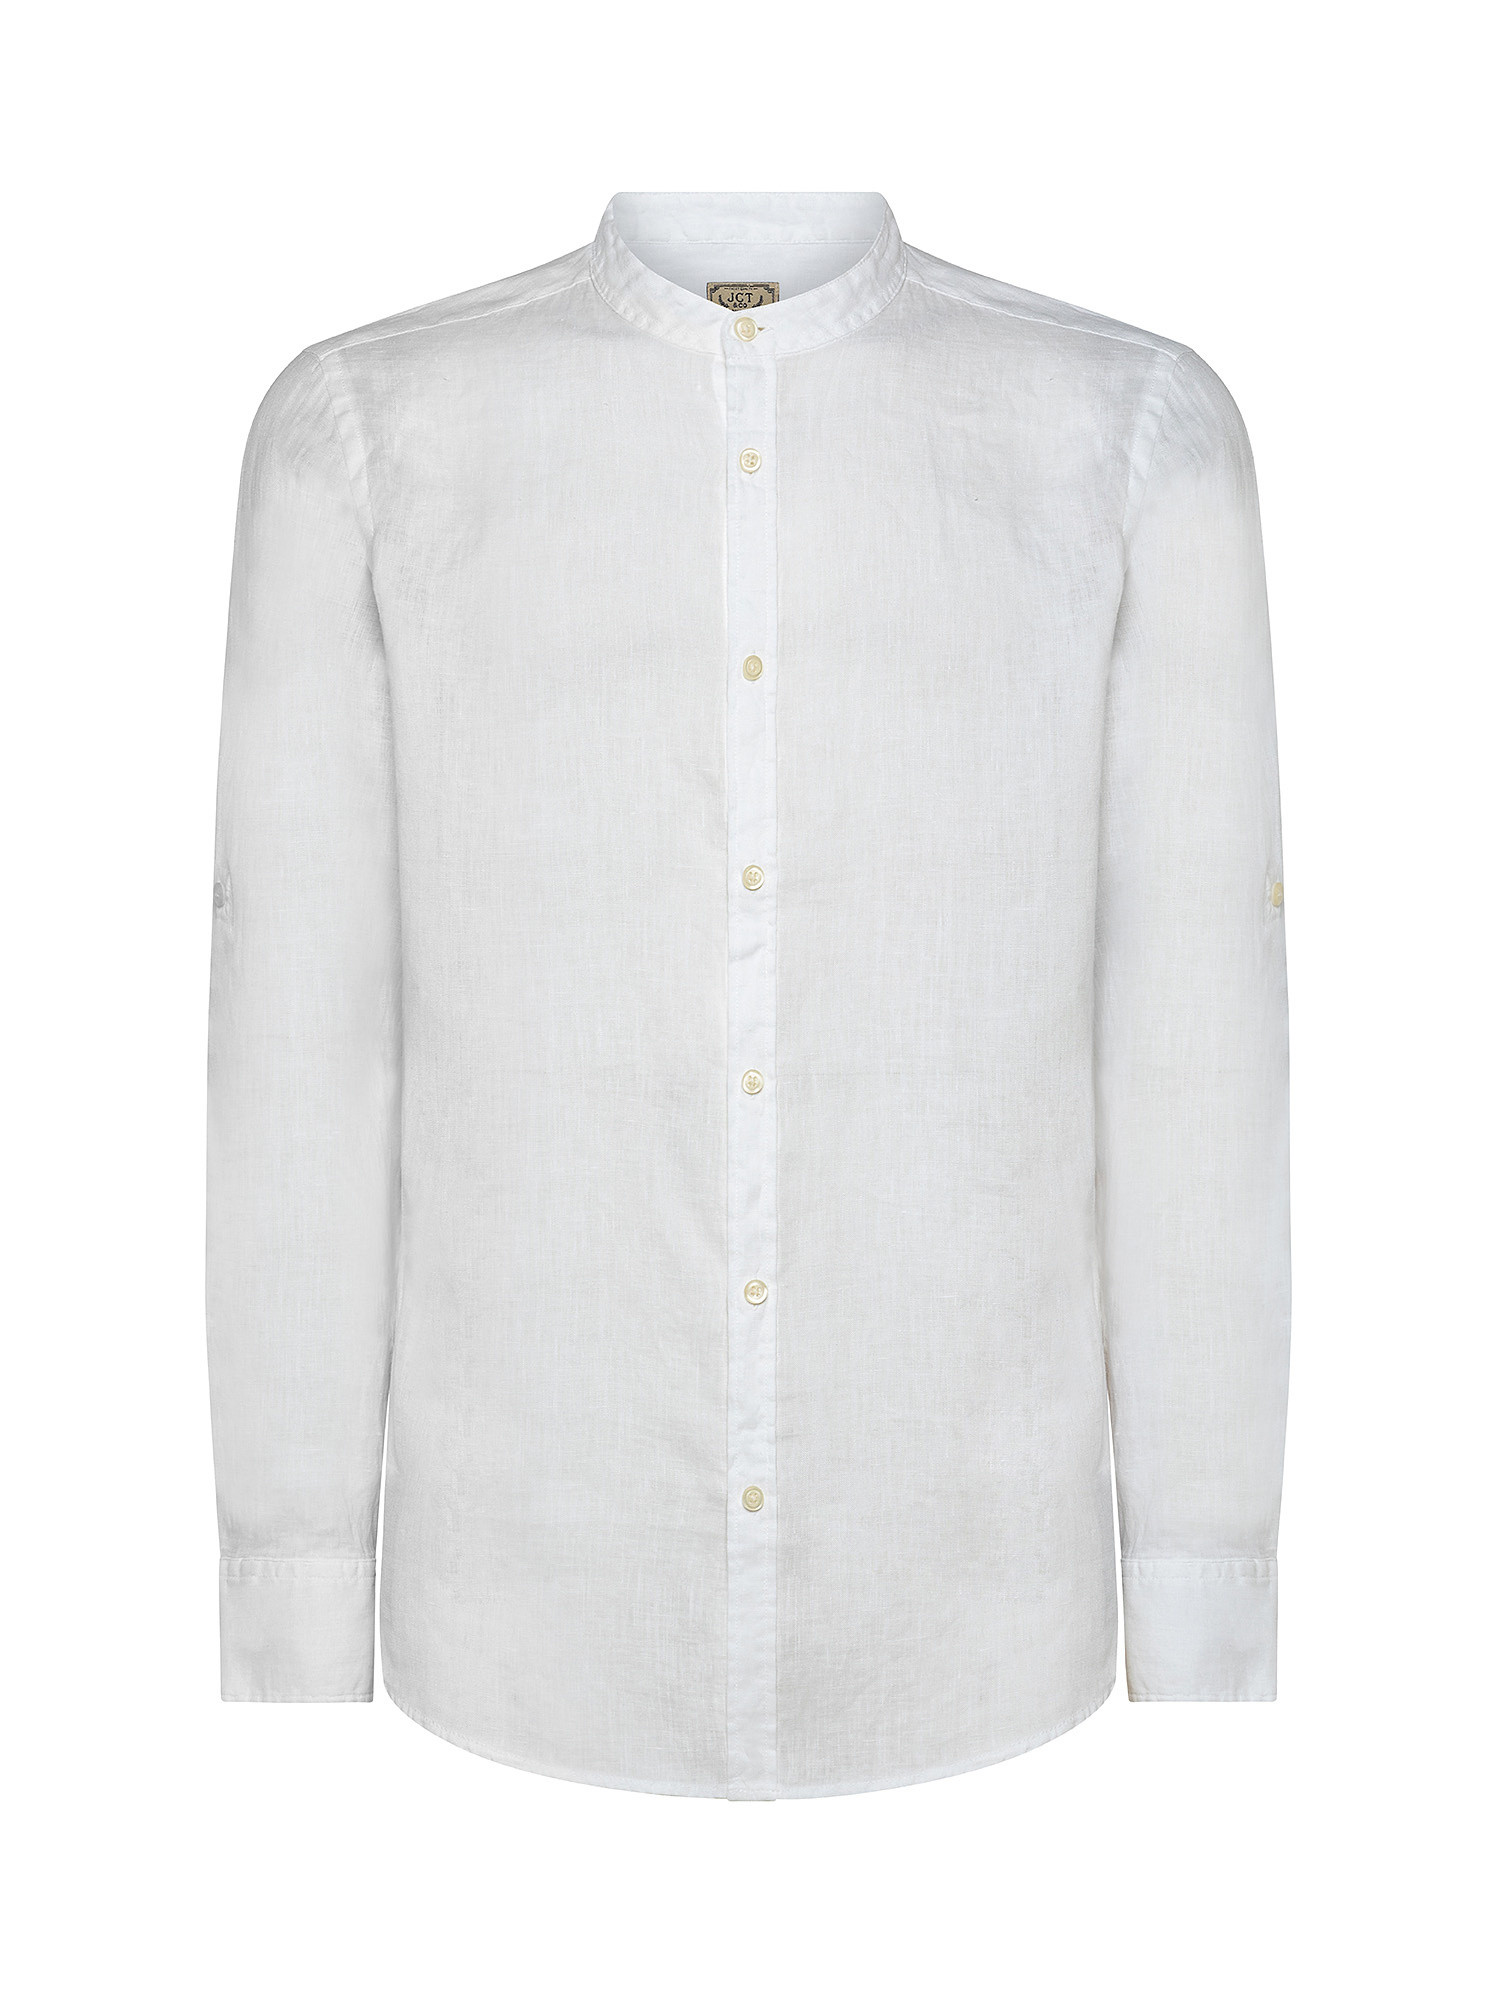 Camicia puro lino collo coreana, Bianco, large